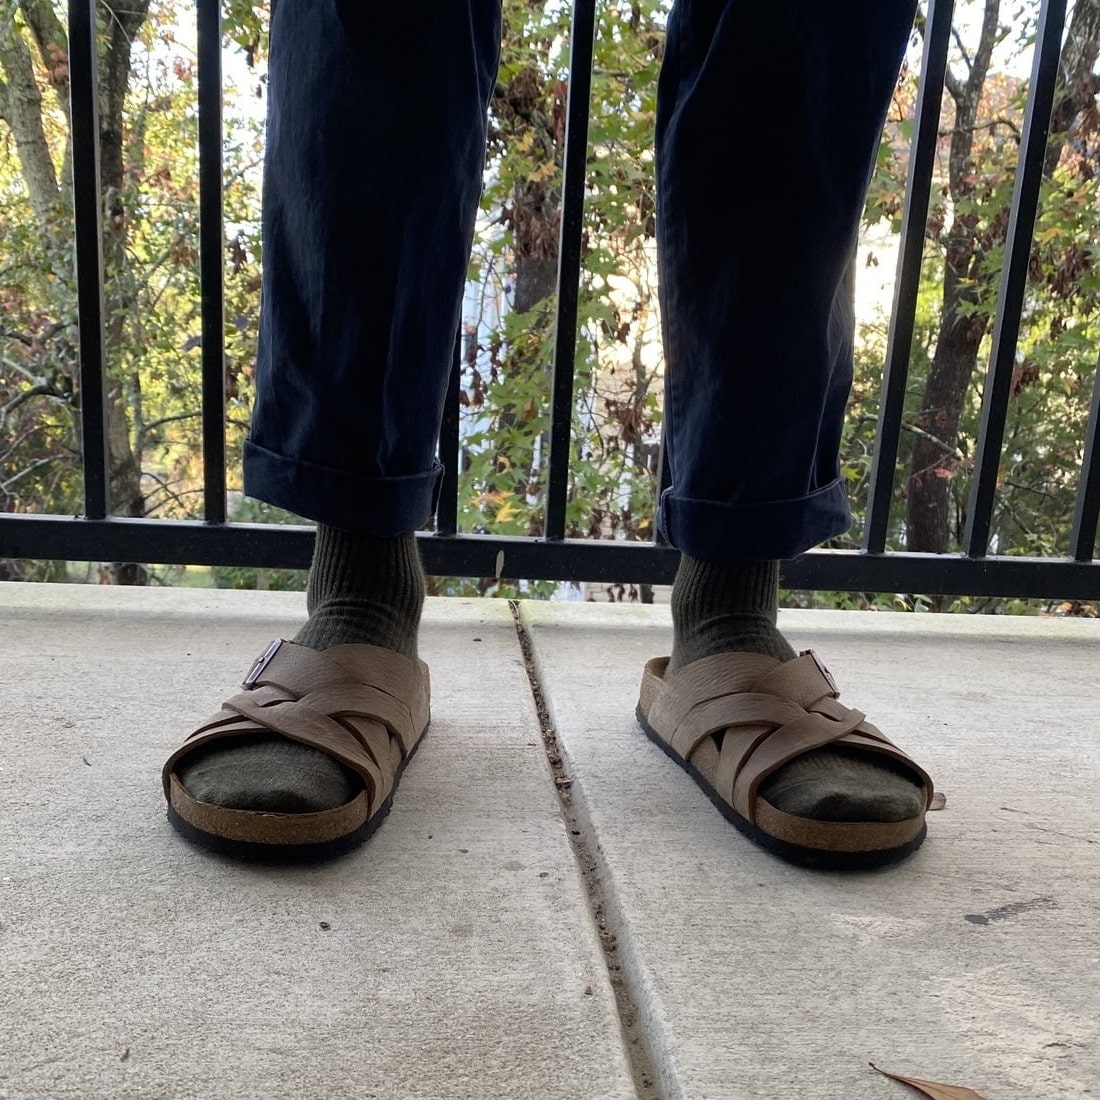 Free People Arizona Teddy Shearling Birkenstock Sandals Size 37 | eBay